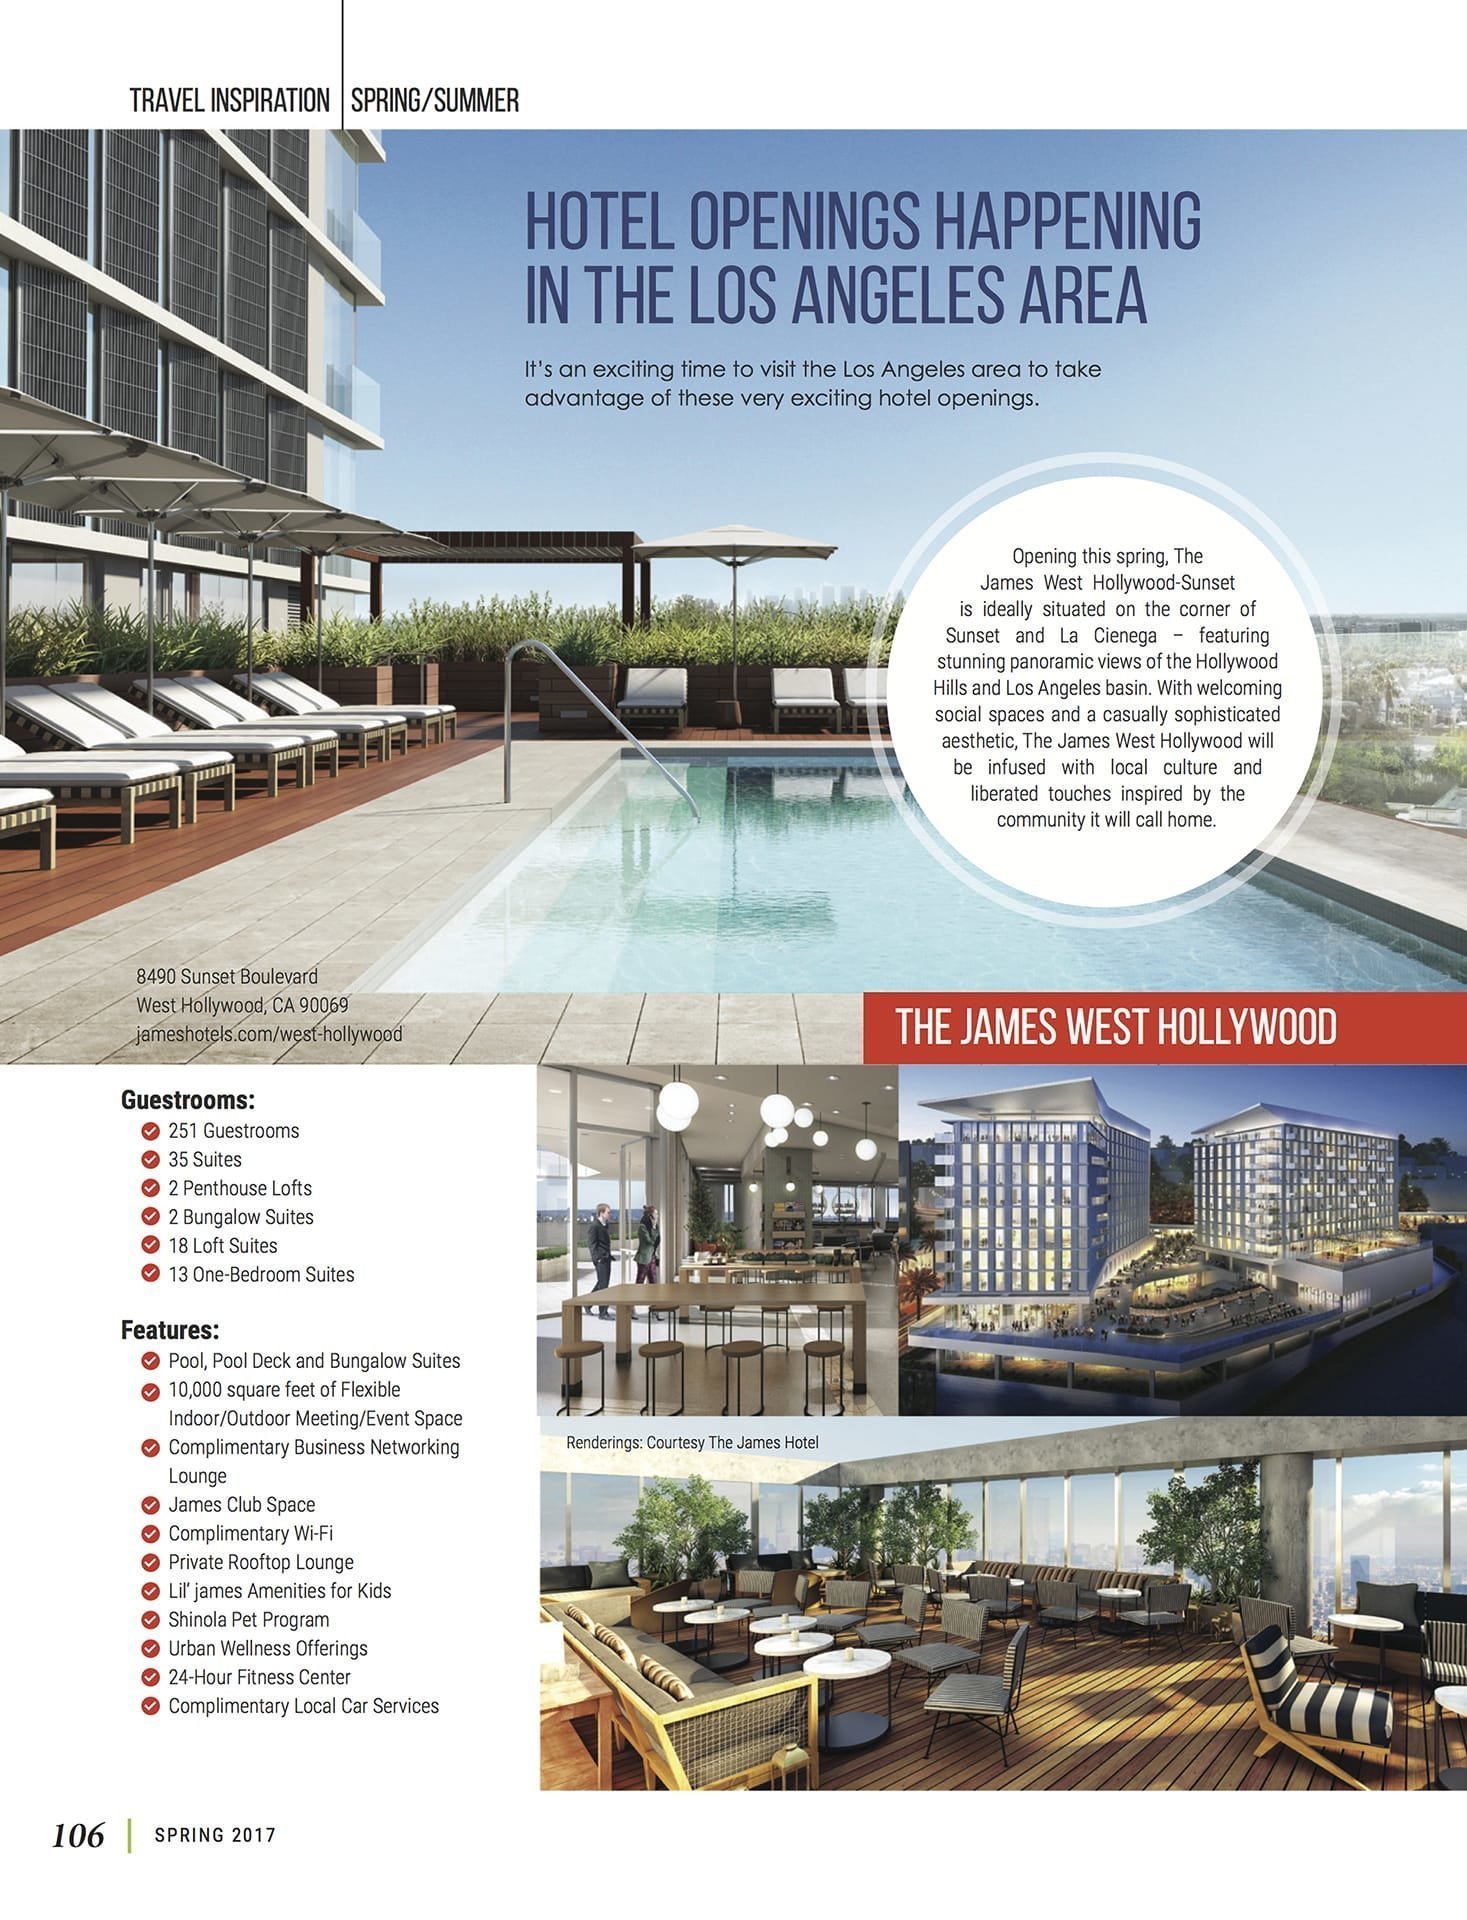 LuxeGetaways - Luxury Travel - Luxury Travel Magazine - New Hotels - TheJames West Hollywood